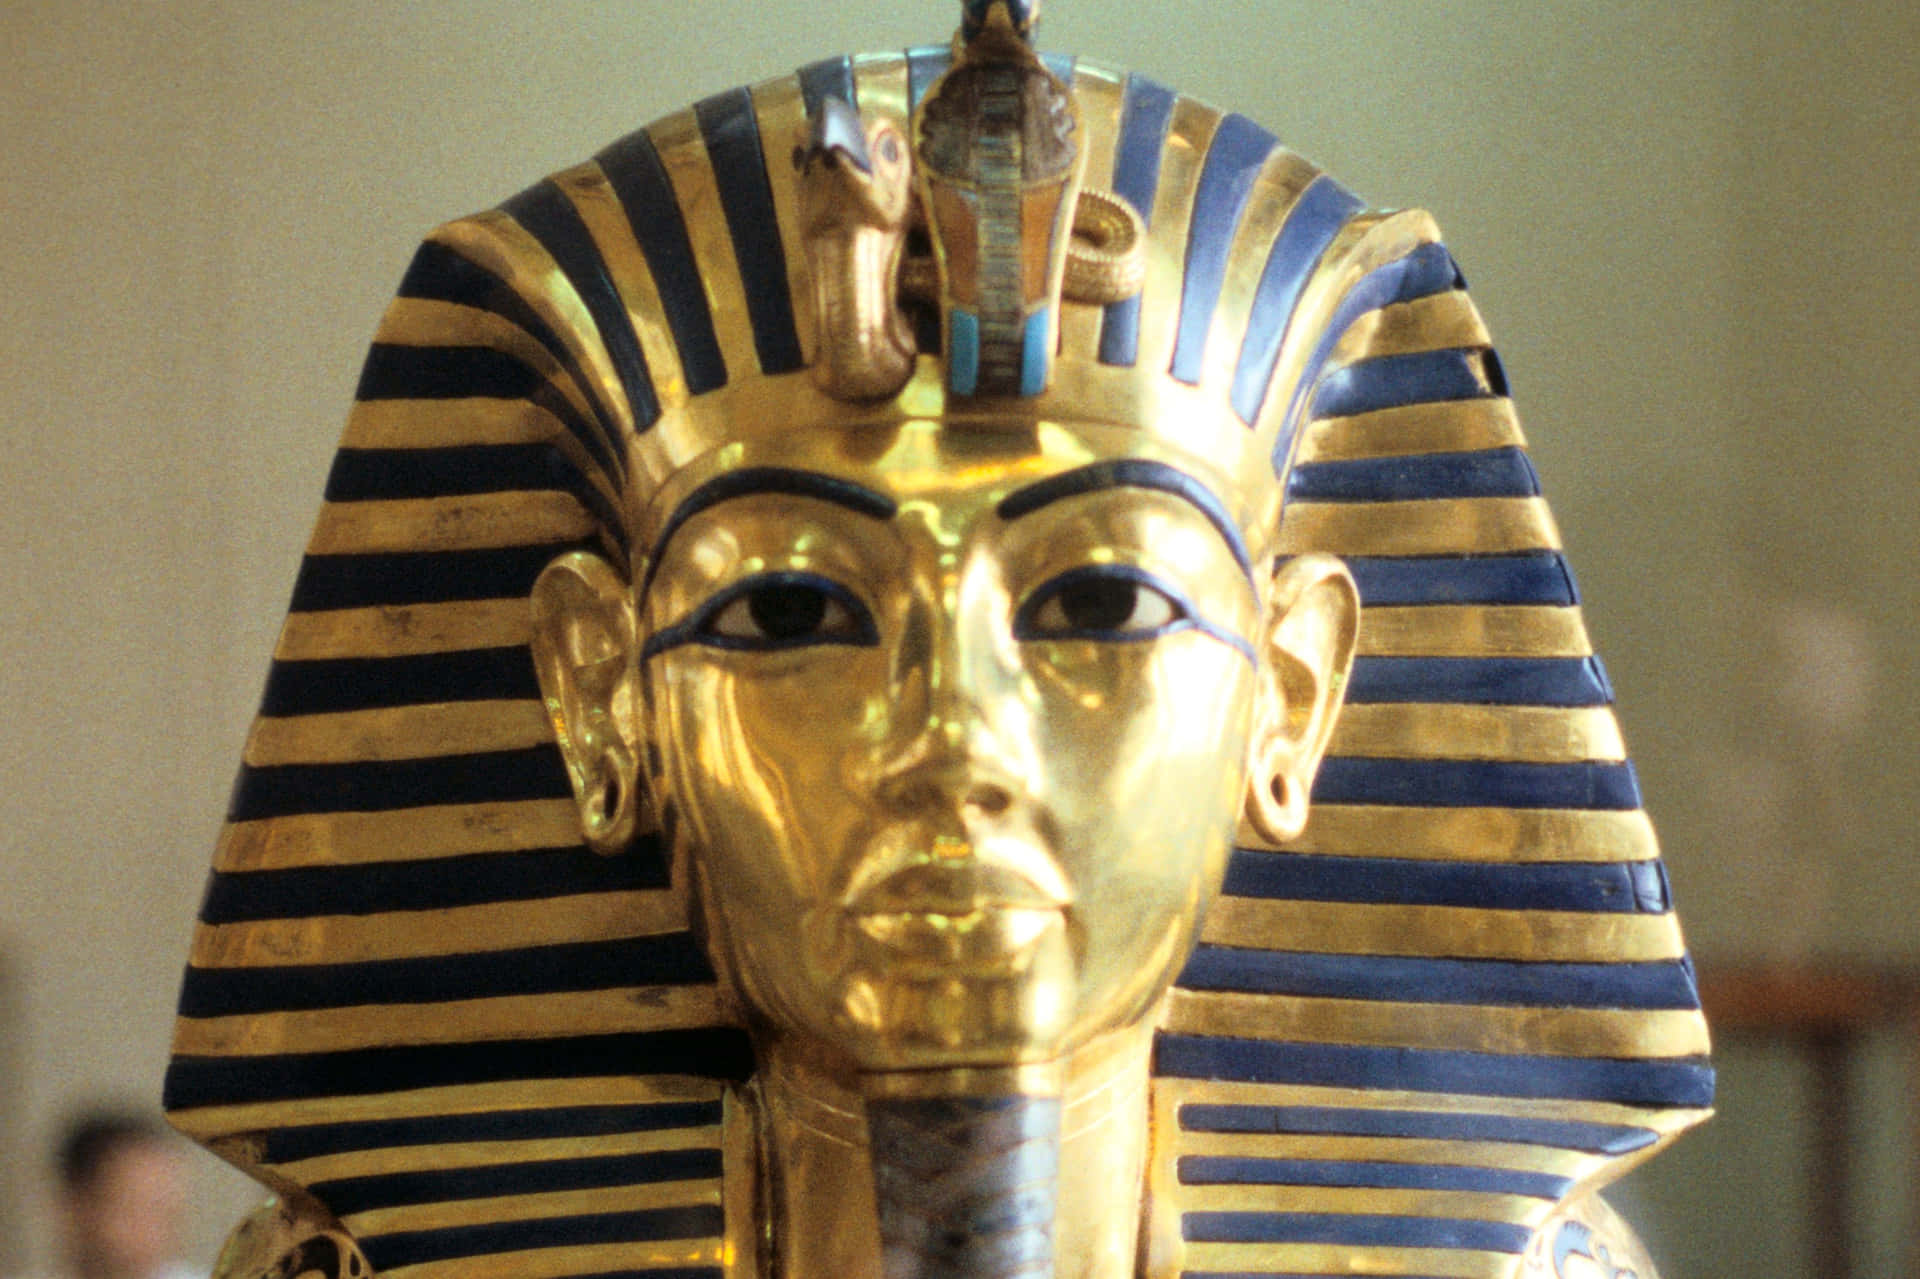 Anticaciviltà Egizia: Uno Sguardo Al Passato